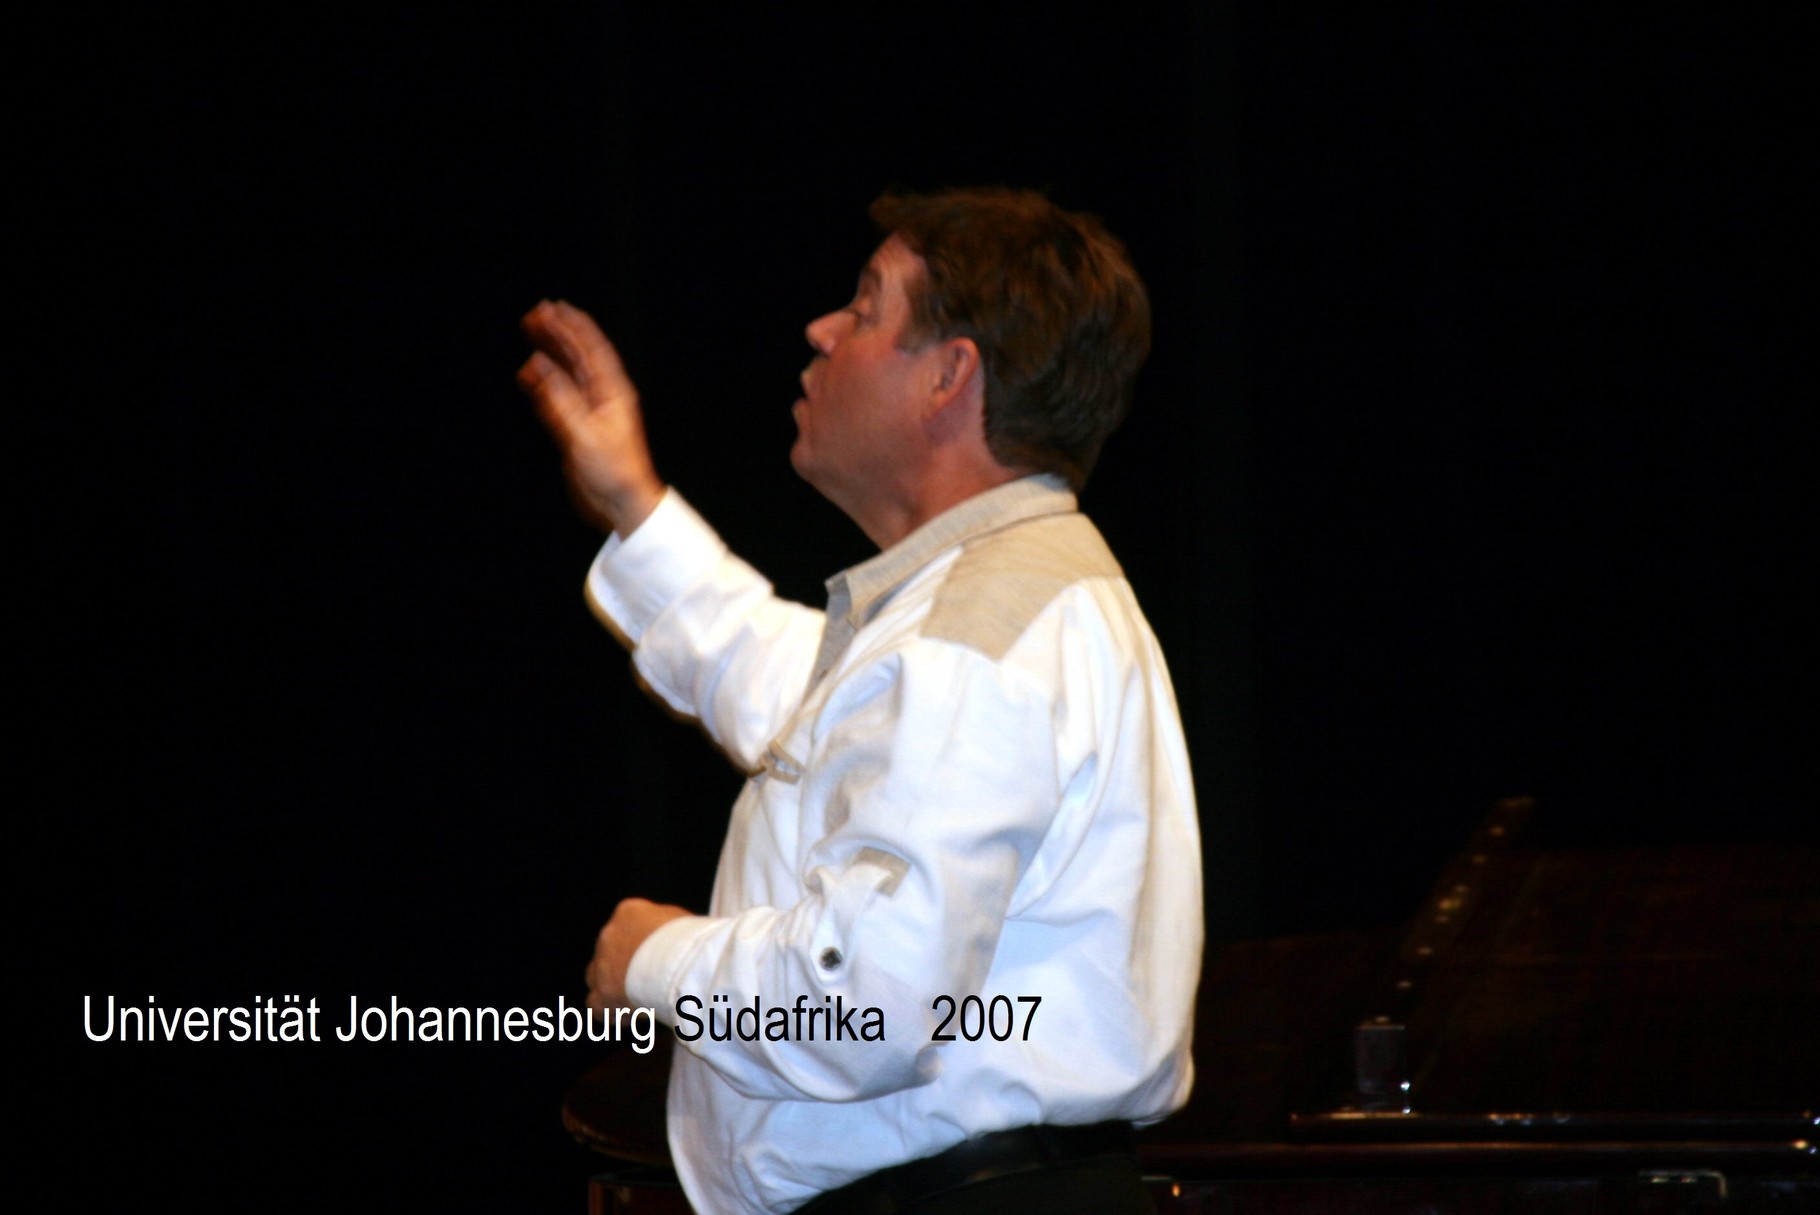 LKE Schwarzwald-Romantik  - Universität Johannesburg Südafrika - Theatersaal - 2007